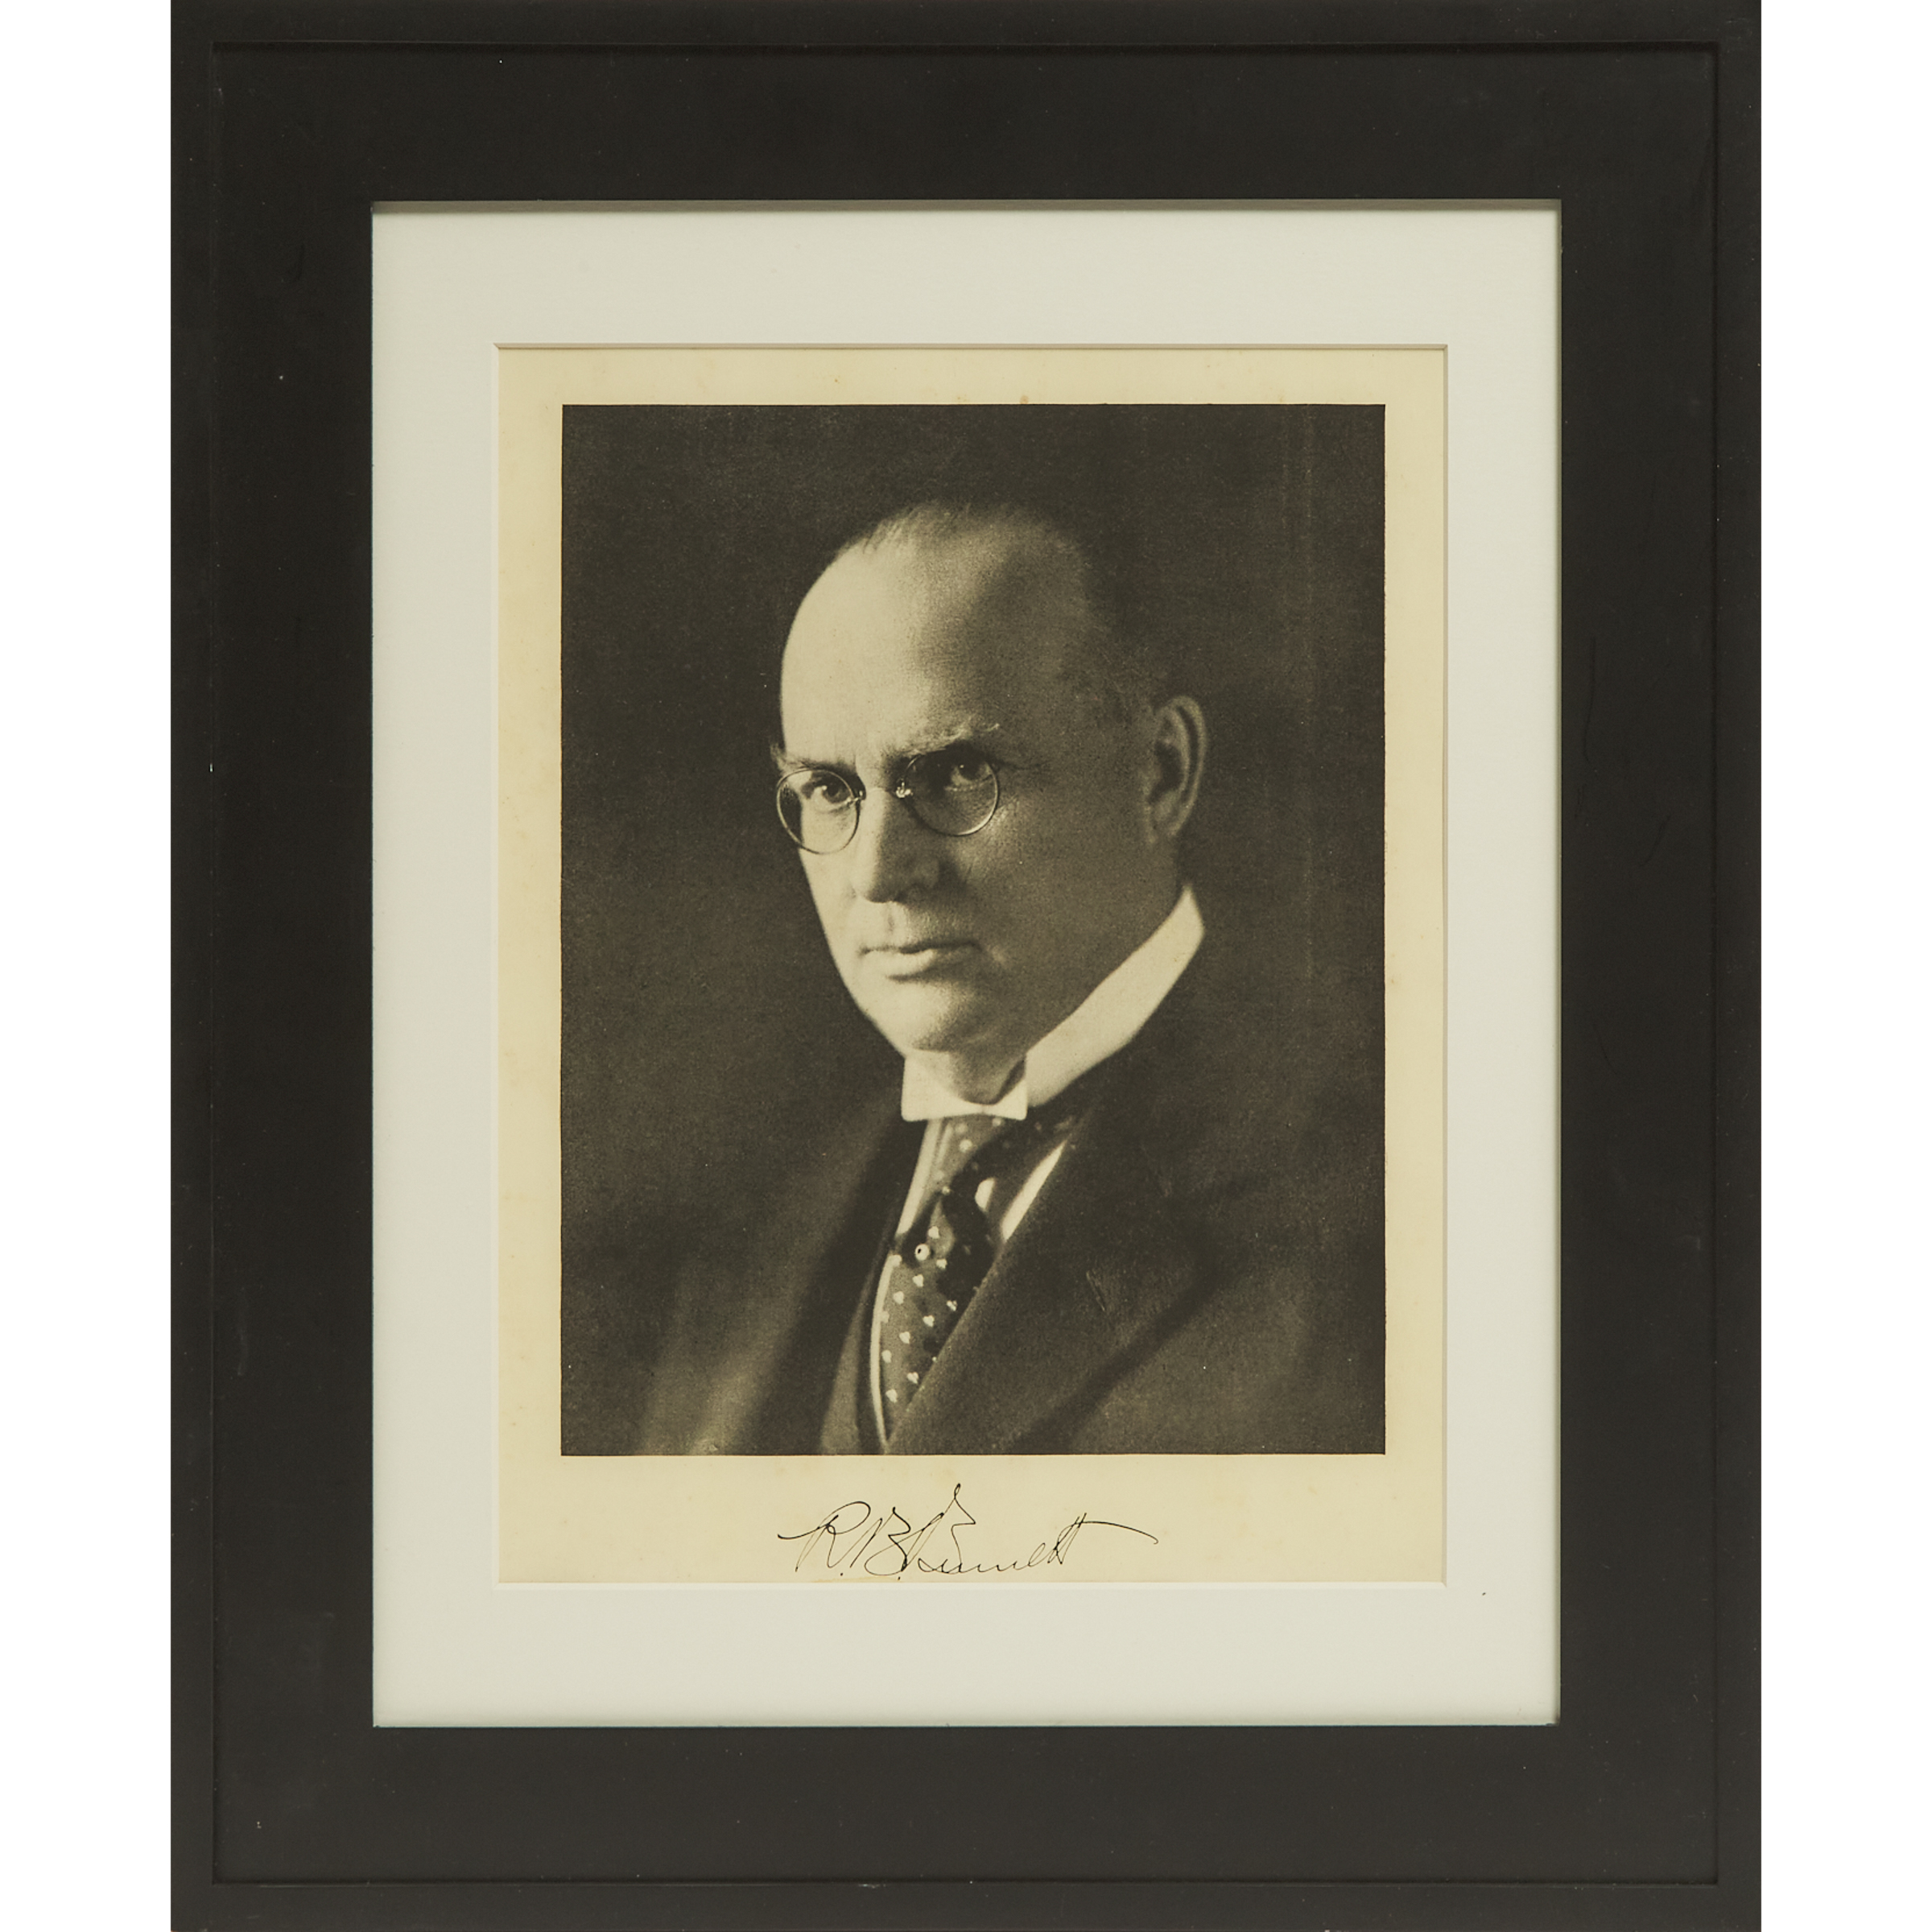 Robert Bedford Bennett Signed Photograph, c.1930